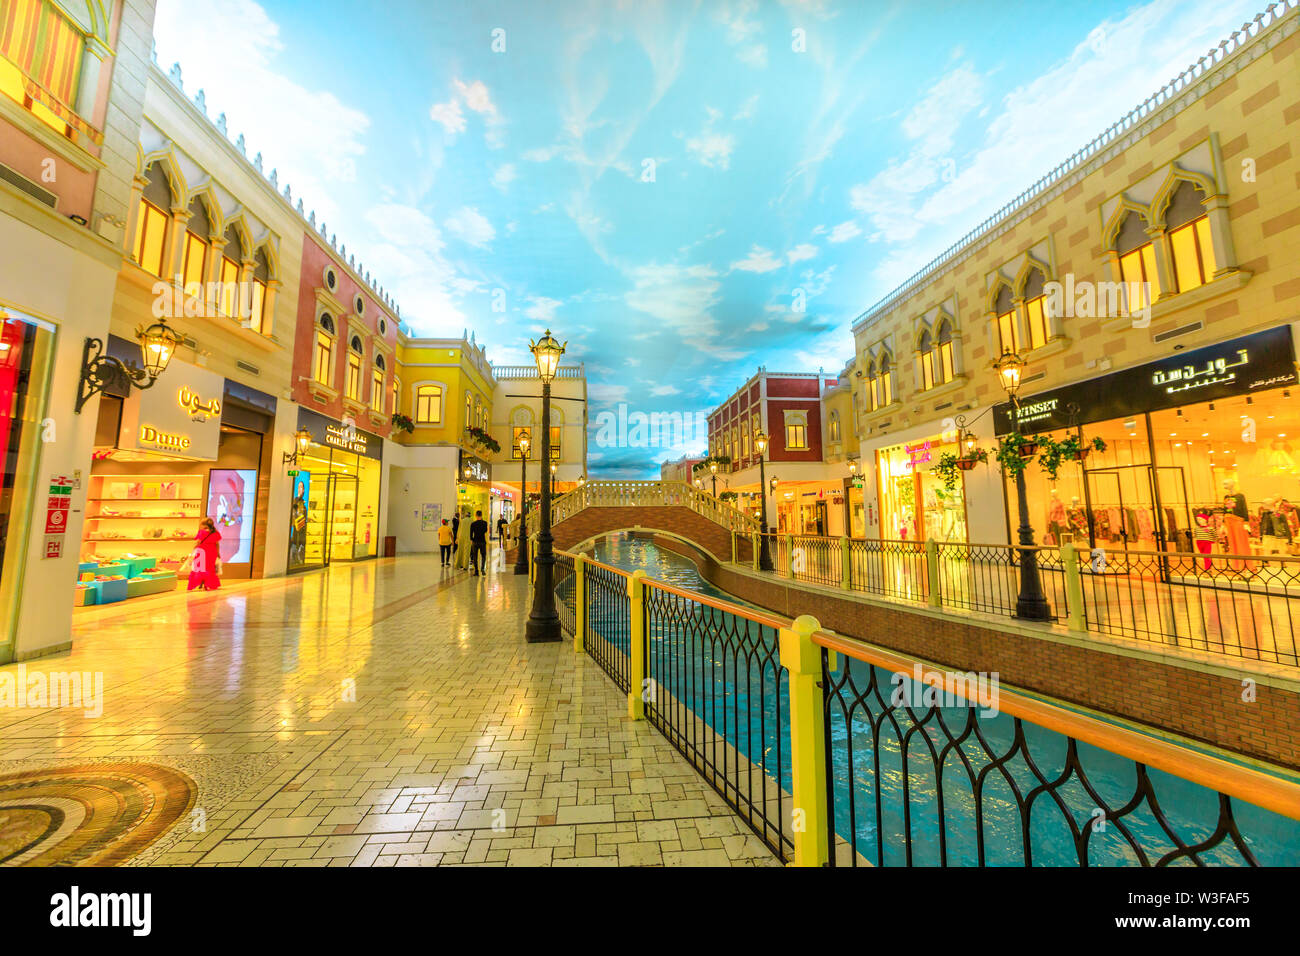 Doha, Qatar - 21 février 2019 - Canal de Venise dans le Villaggio Mall, centre commercial d'Aspire Zone. Marques de luxe, cher magasins et boutiques exclusives Banque D'Images